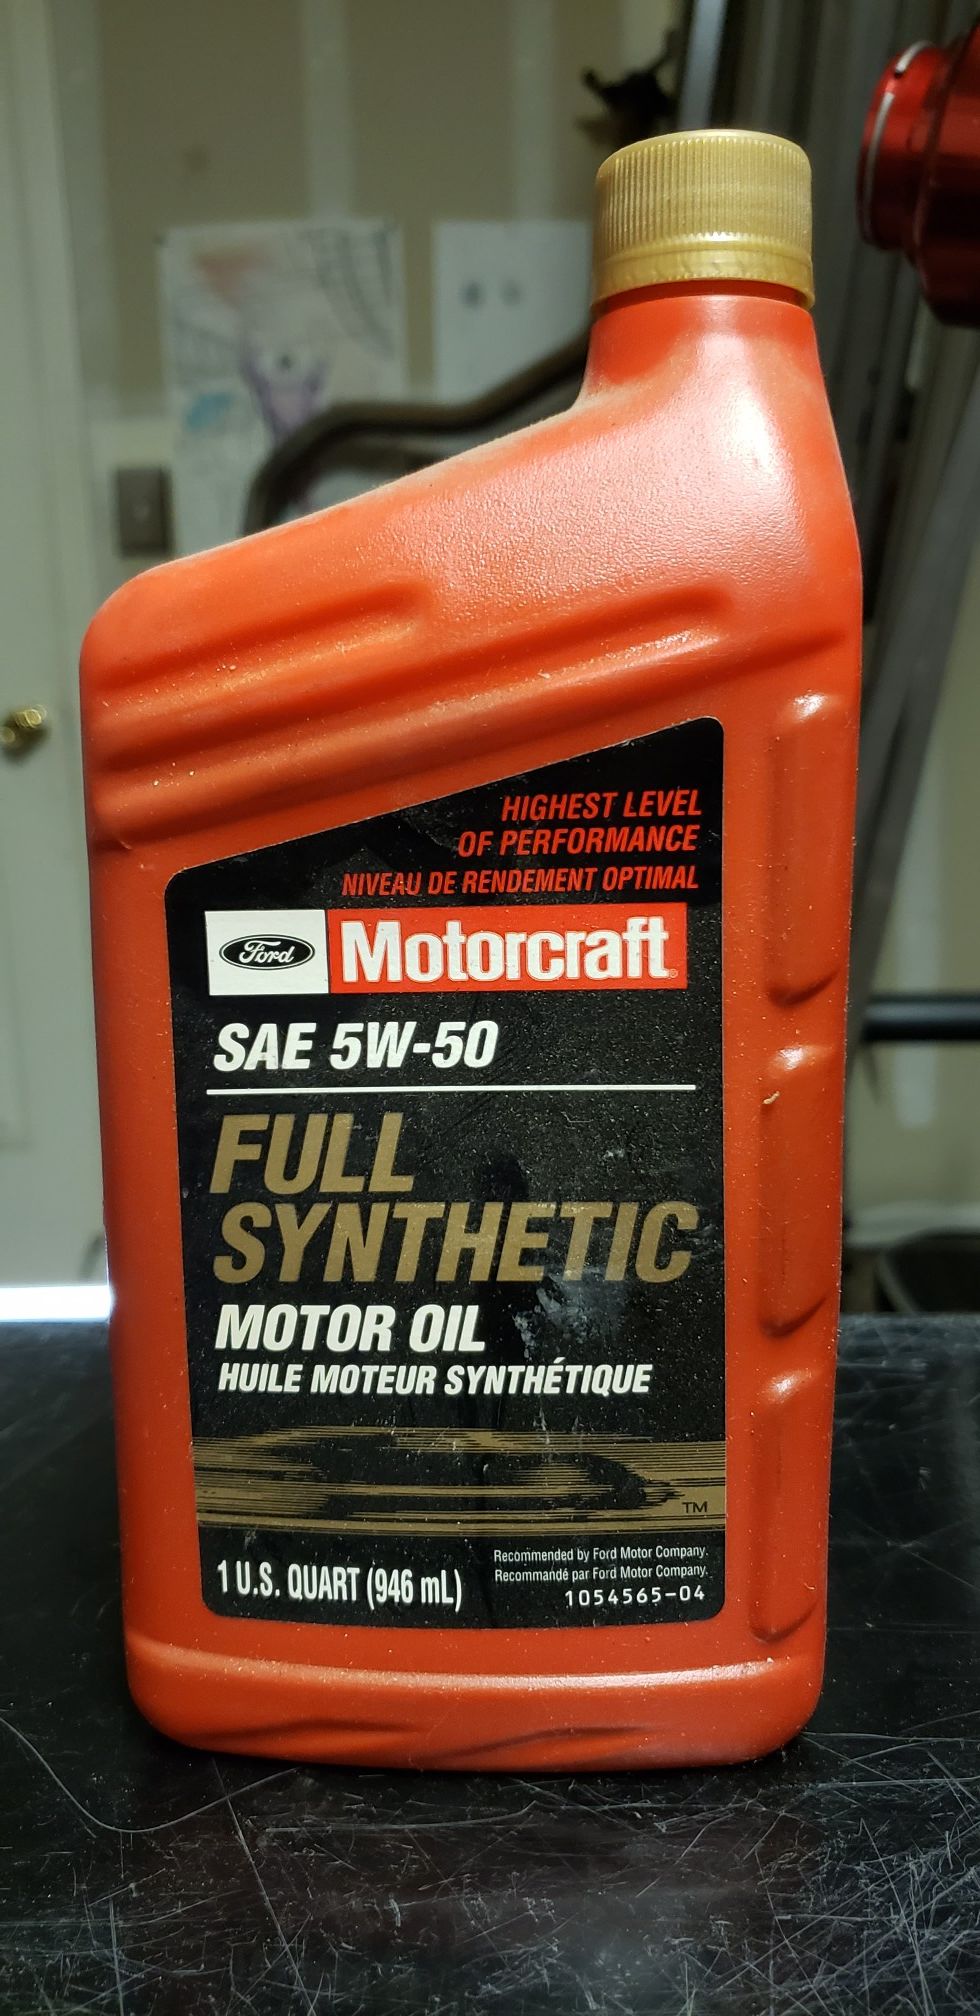 Synthetic motor oil 5w-50